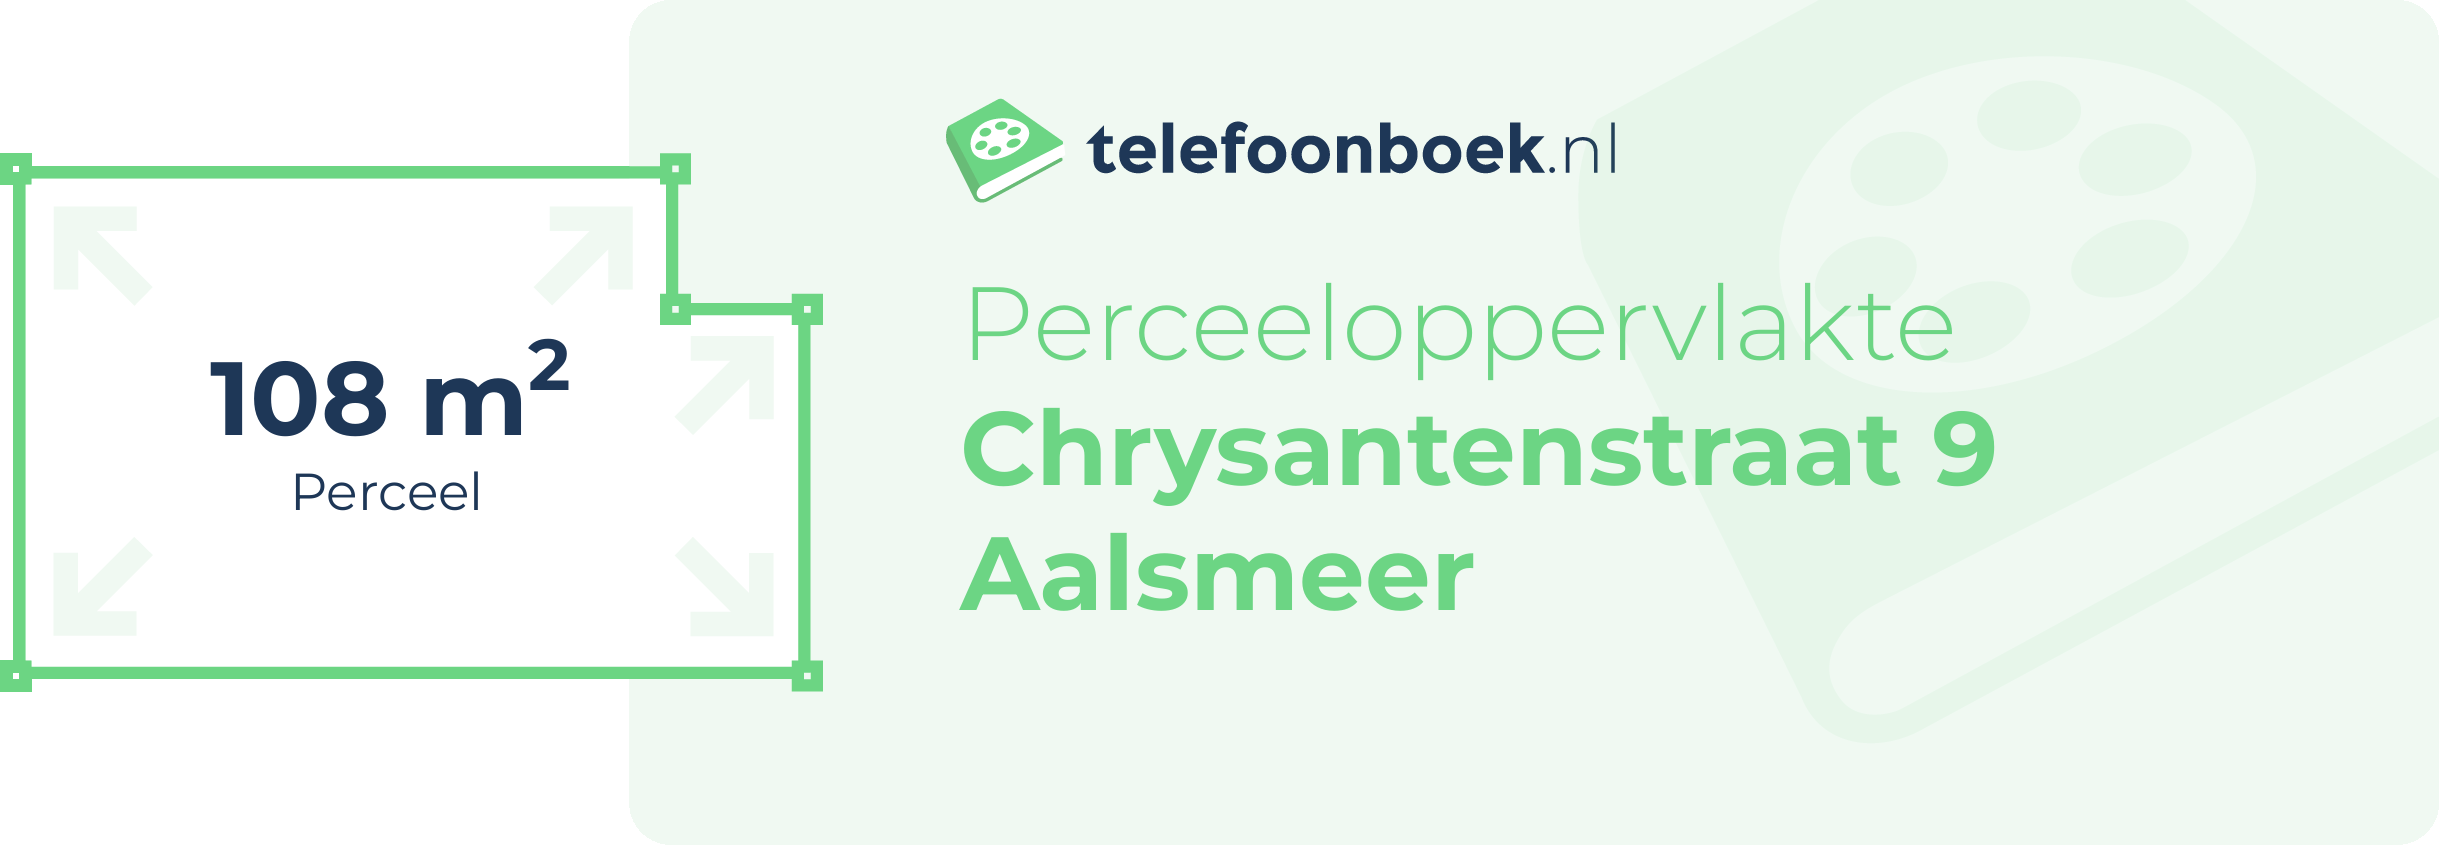 Perceeloppervlakte Chrysantenstraat 9 Aalsmeer